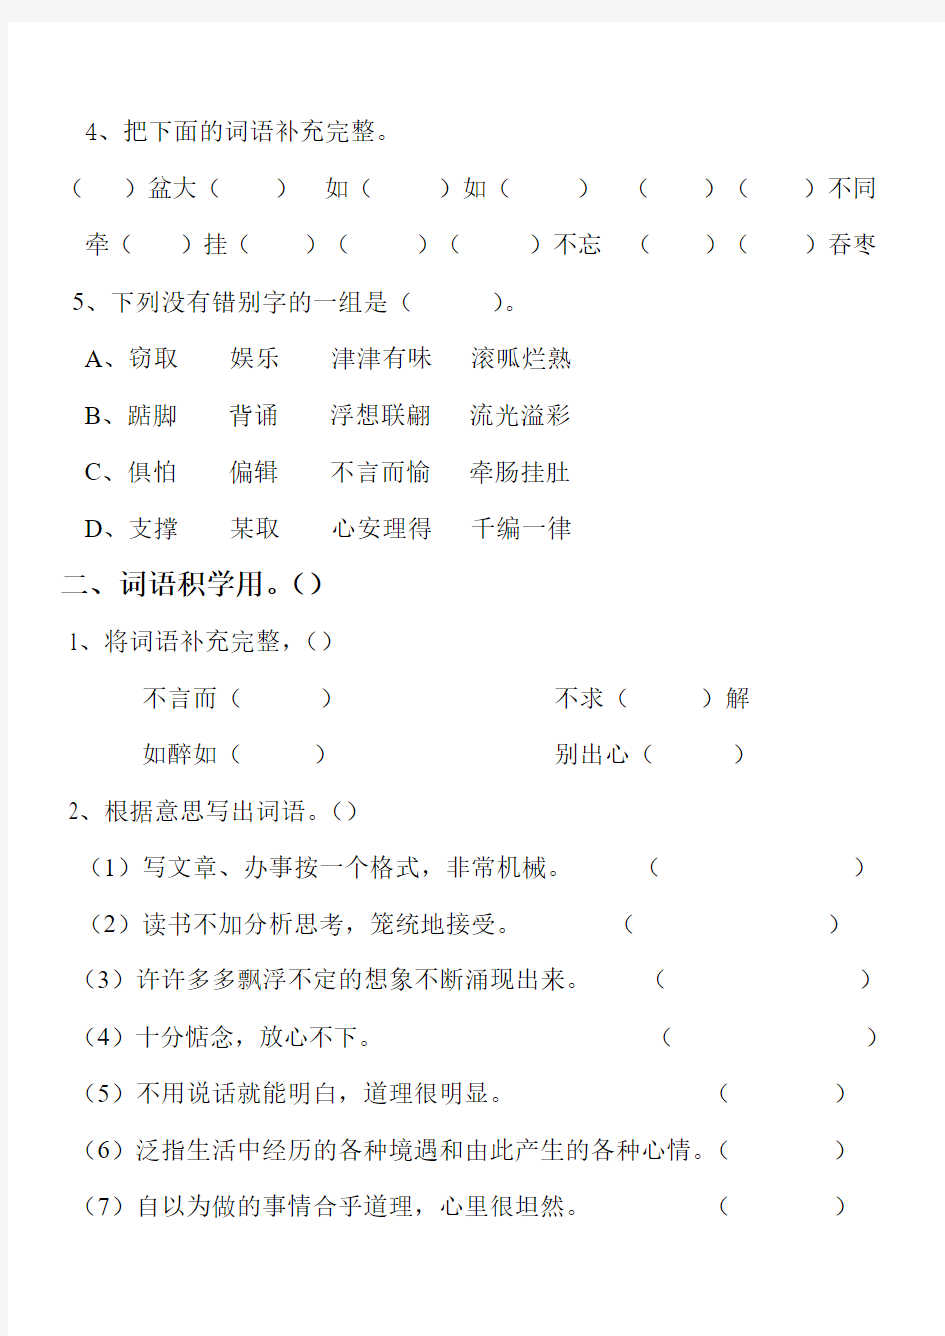 ju人教版语文五年级上册第一单元素质测评试卷(附答案)